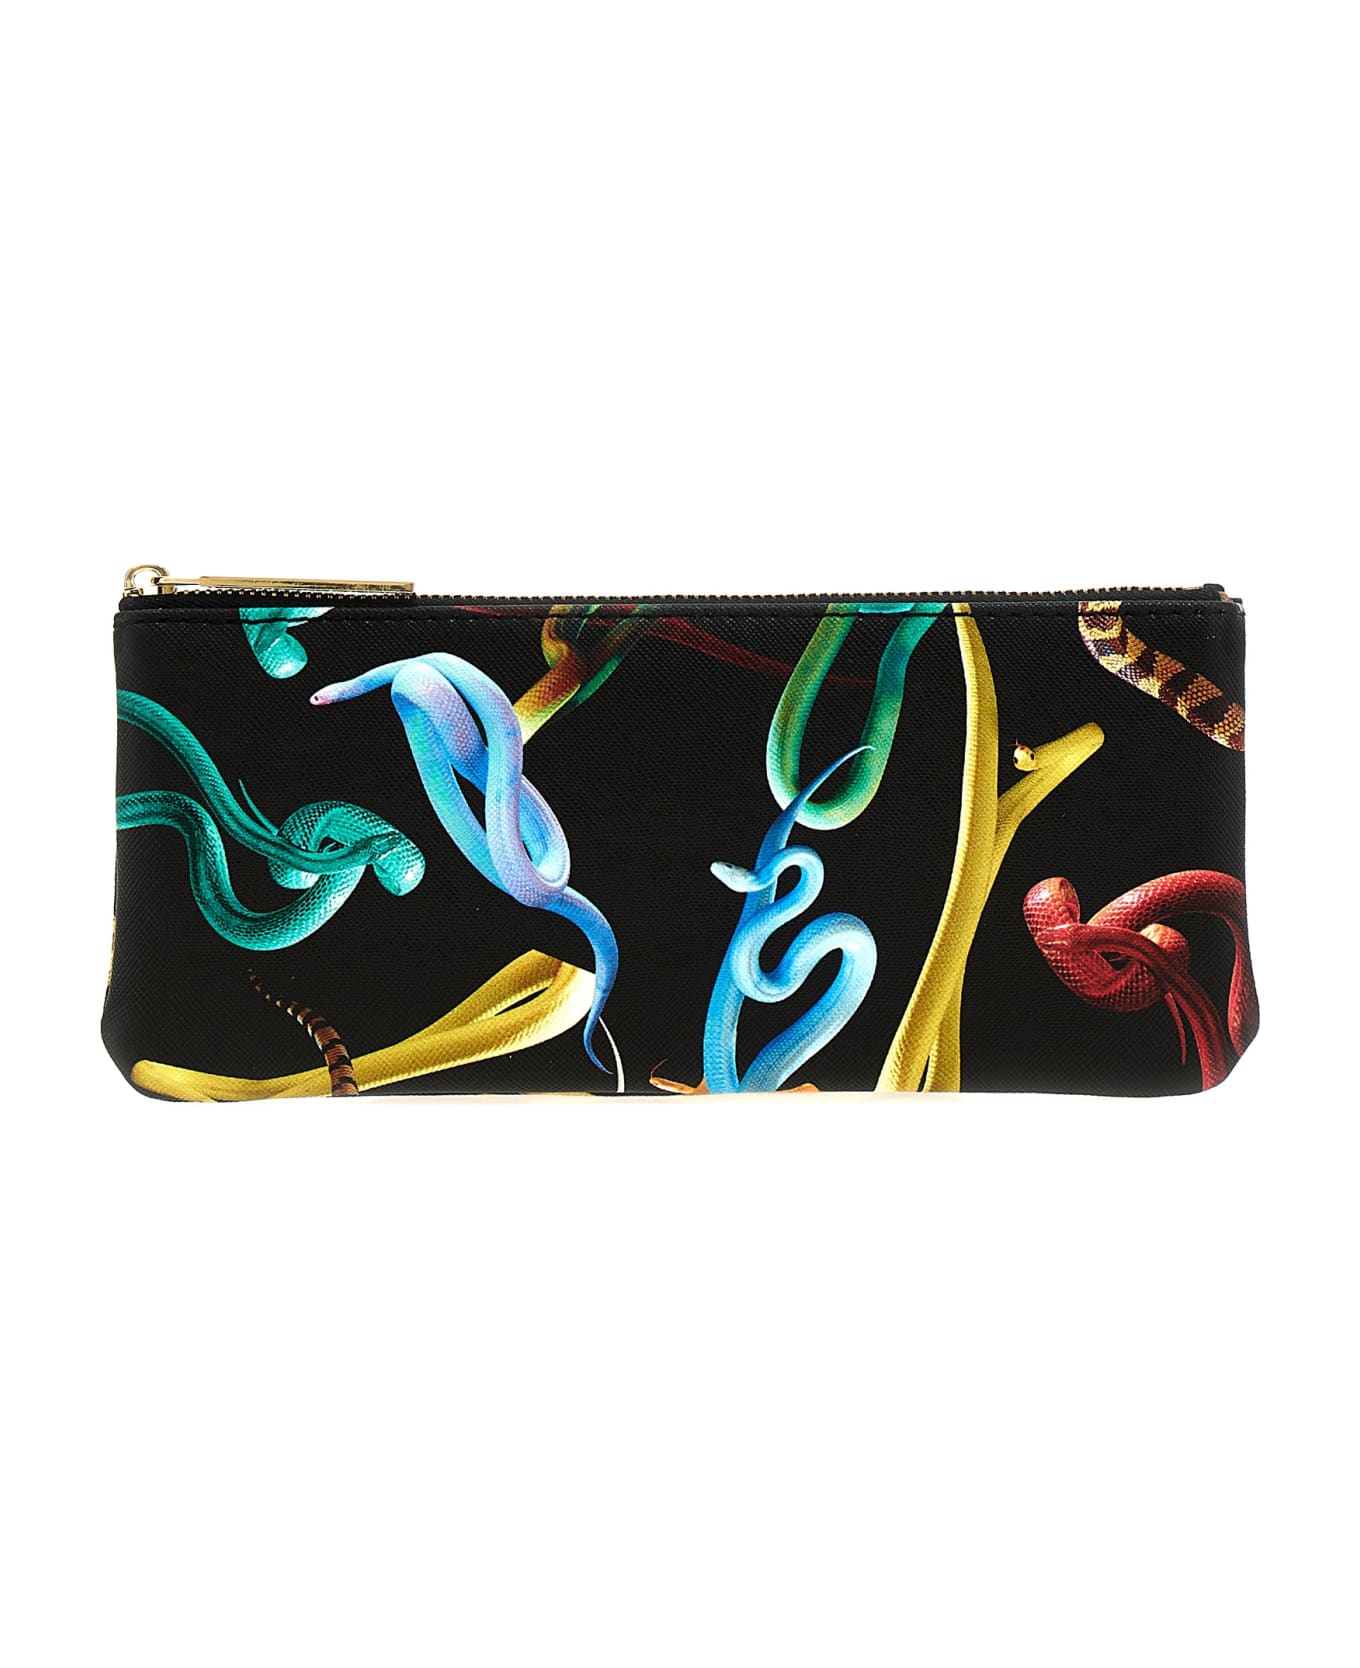 Seletti X Toiletpaper 'snakes' Case - Multicolor